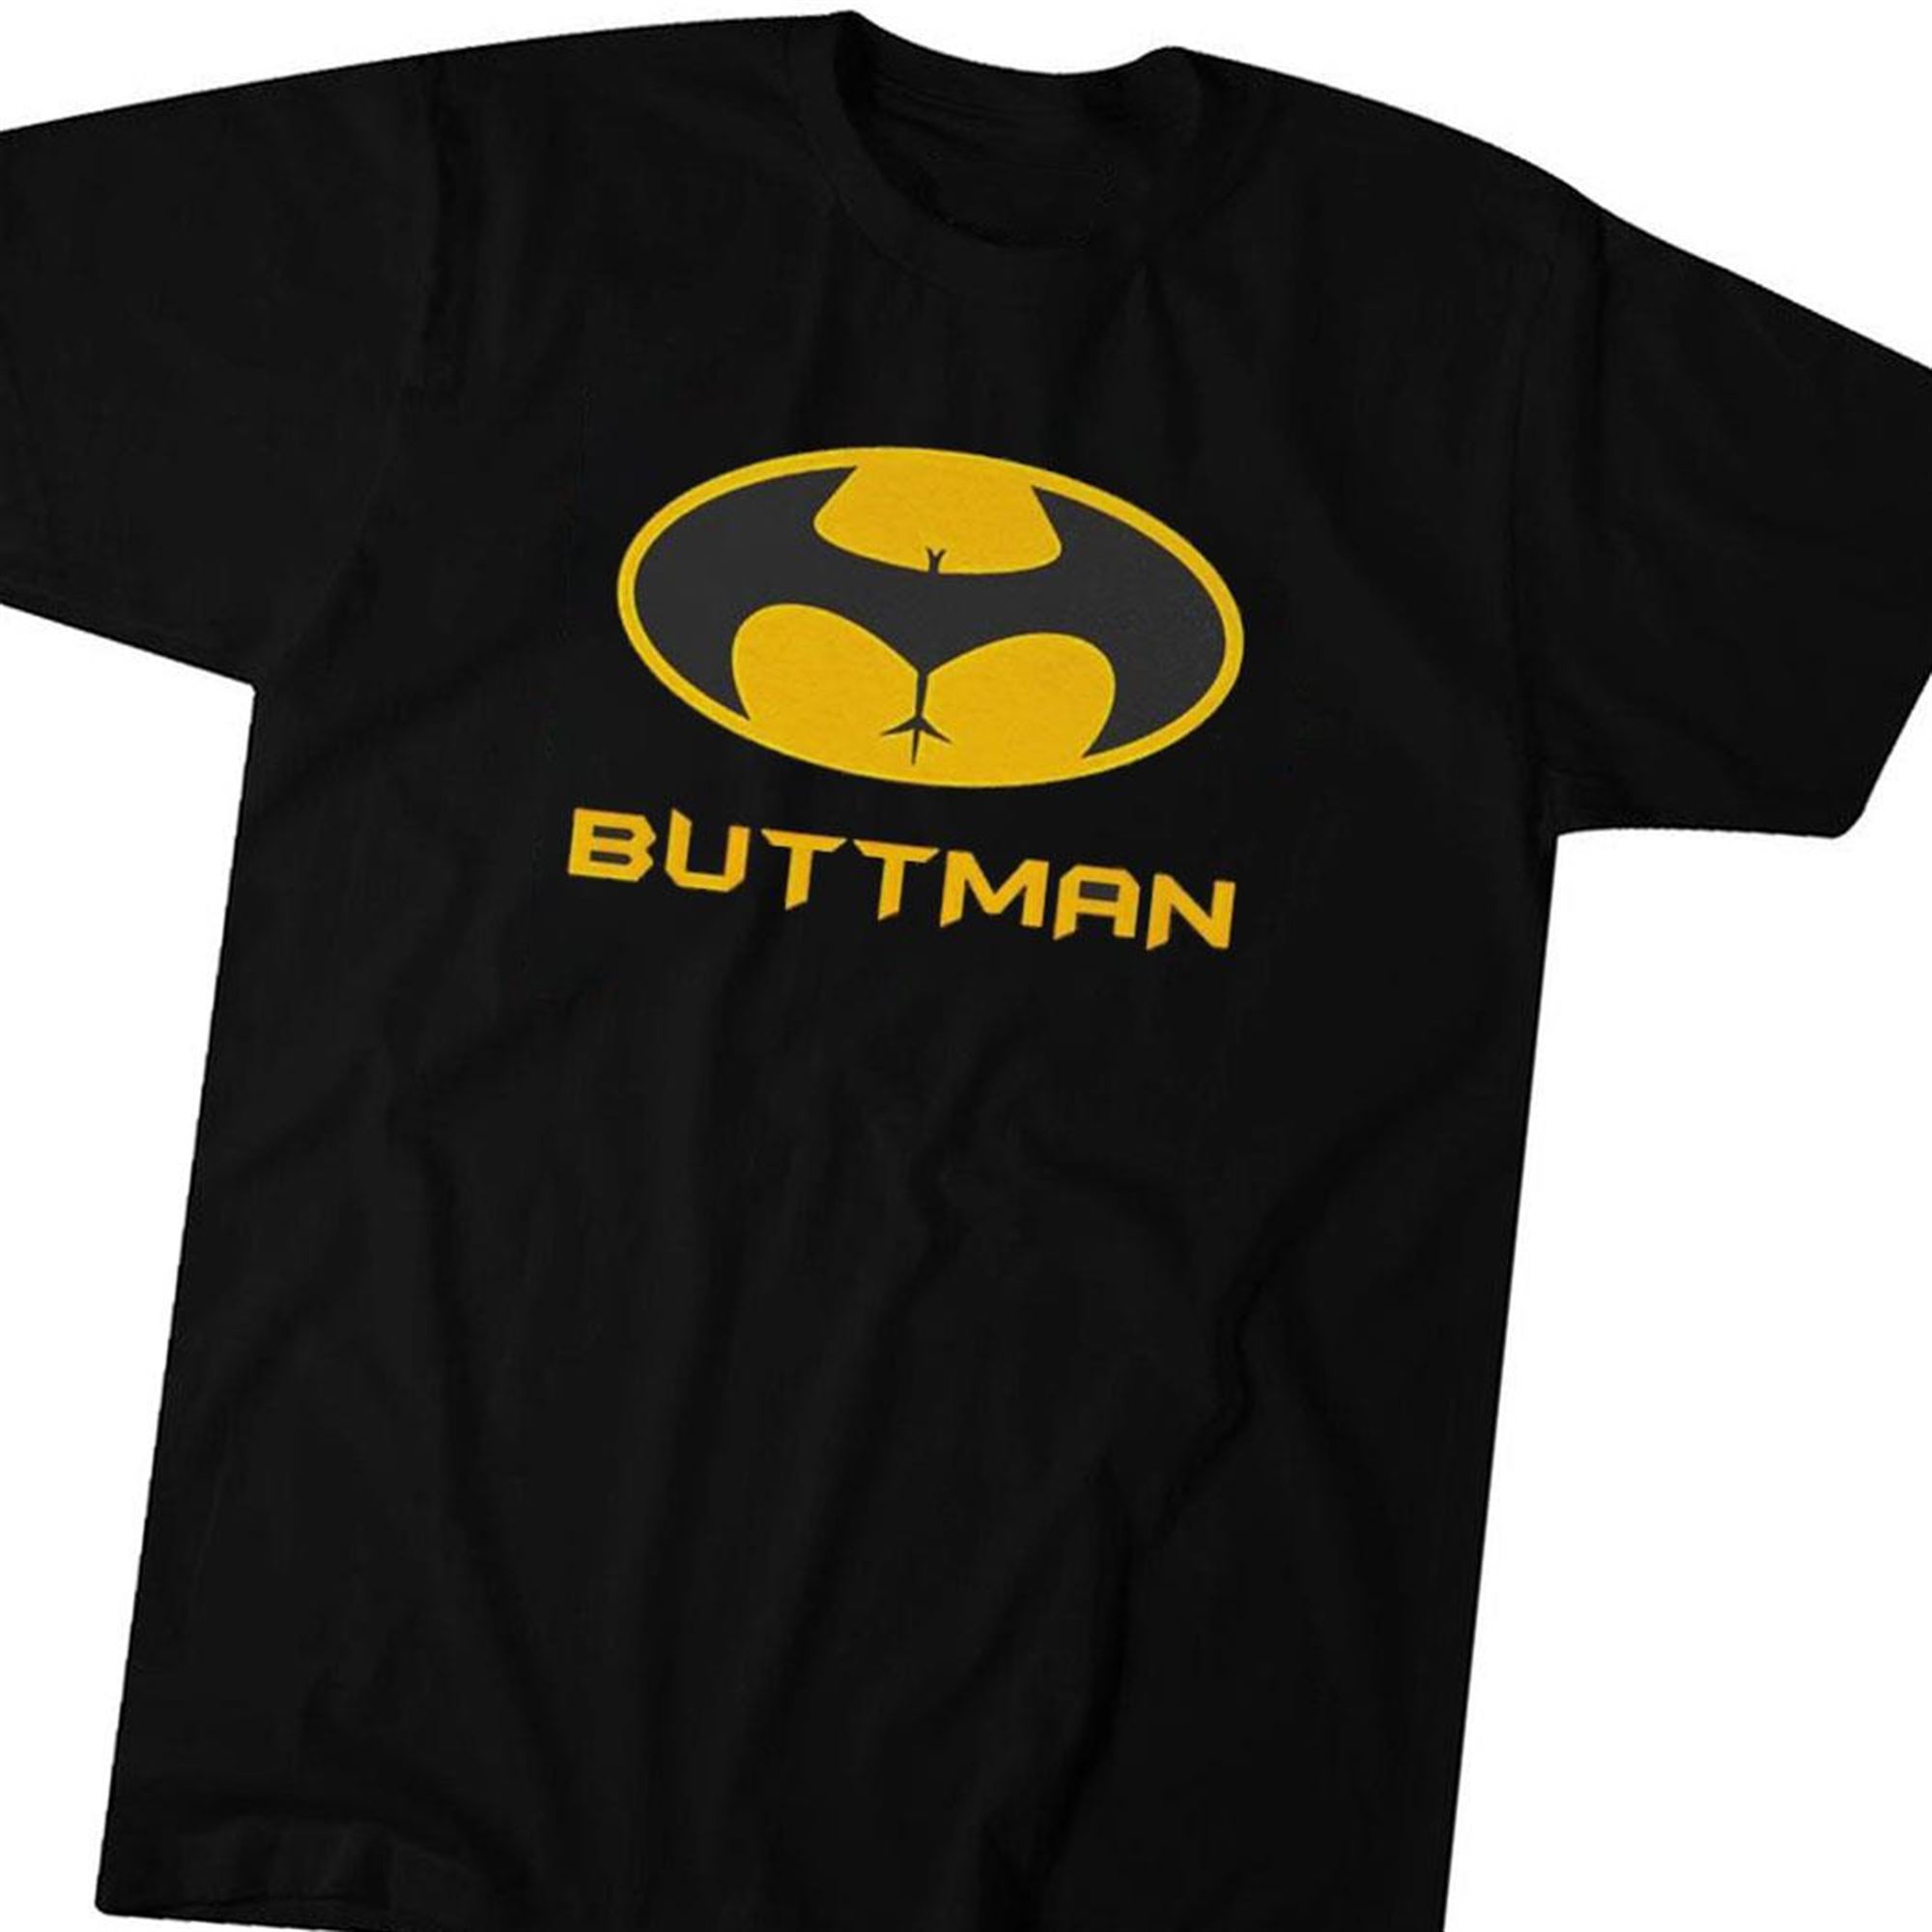 Buttman Logo T-shirt